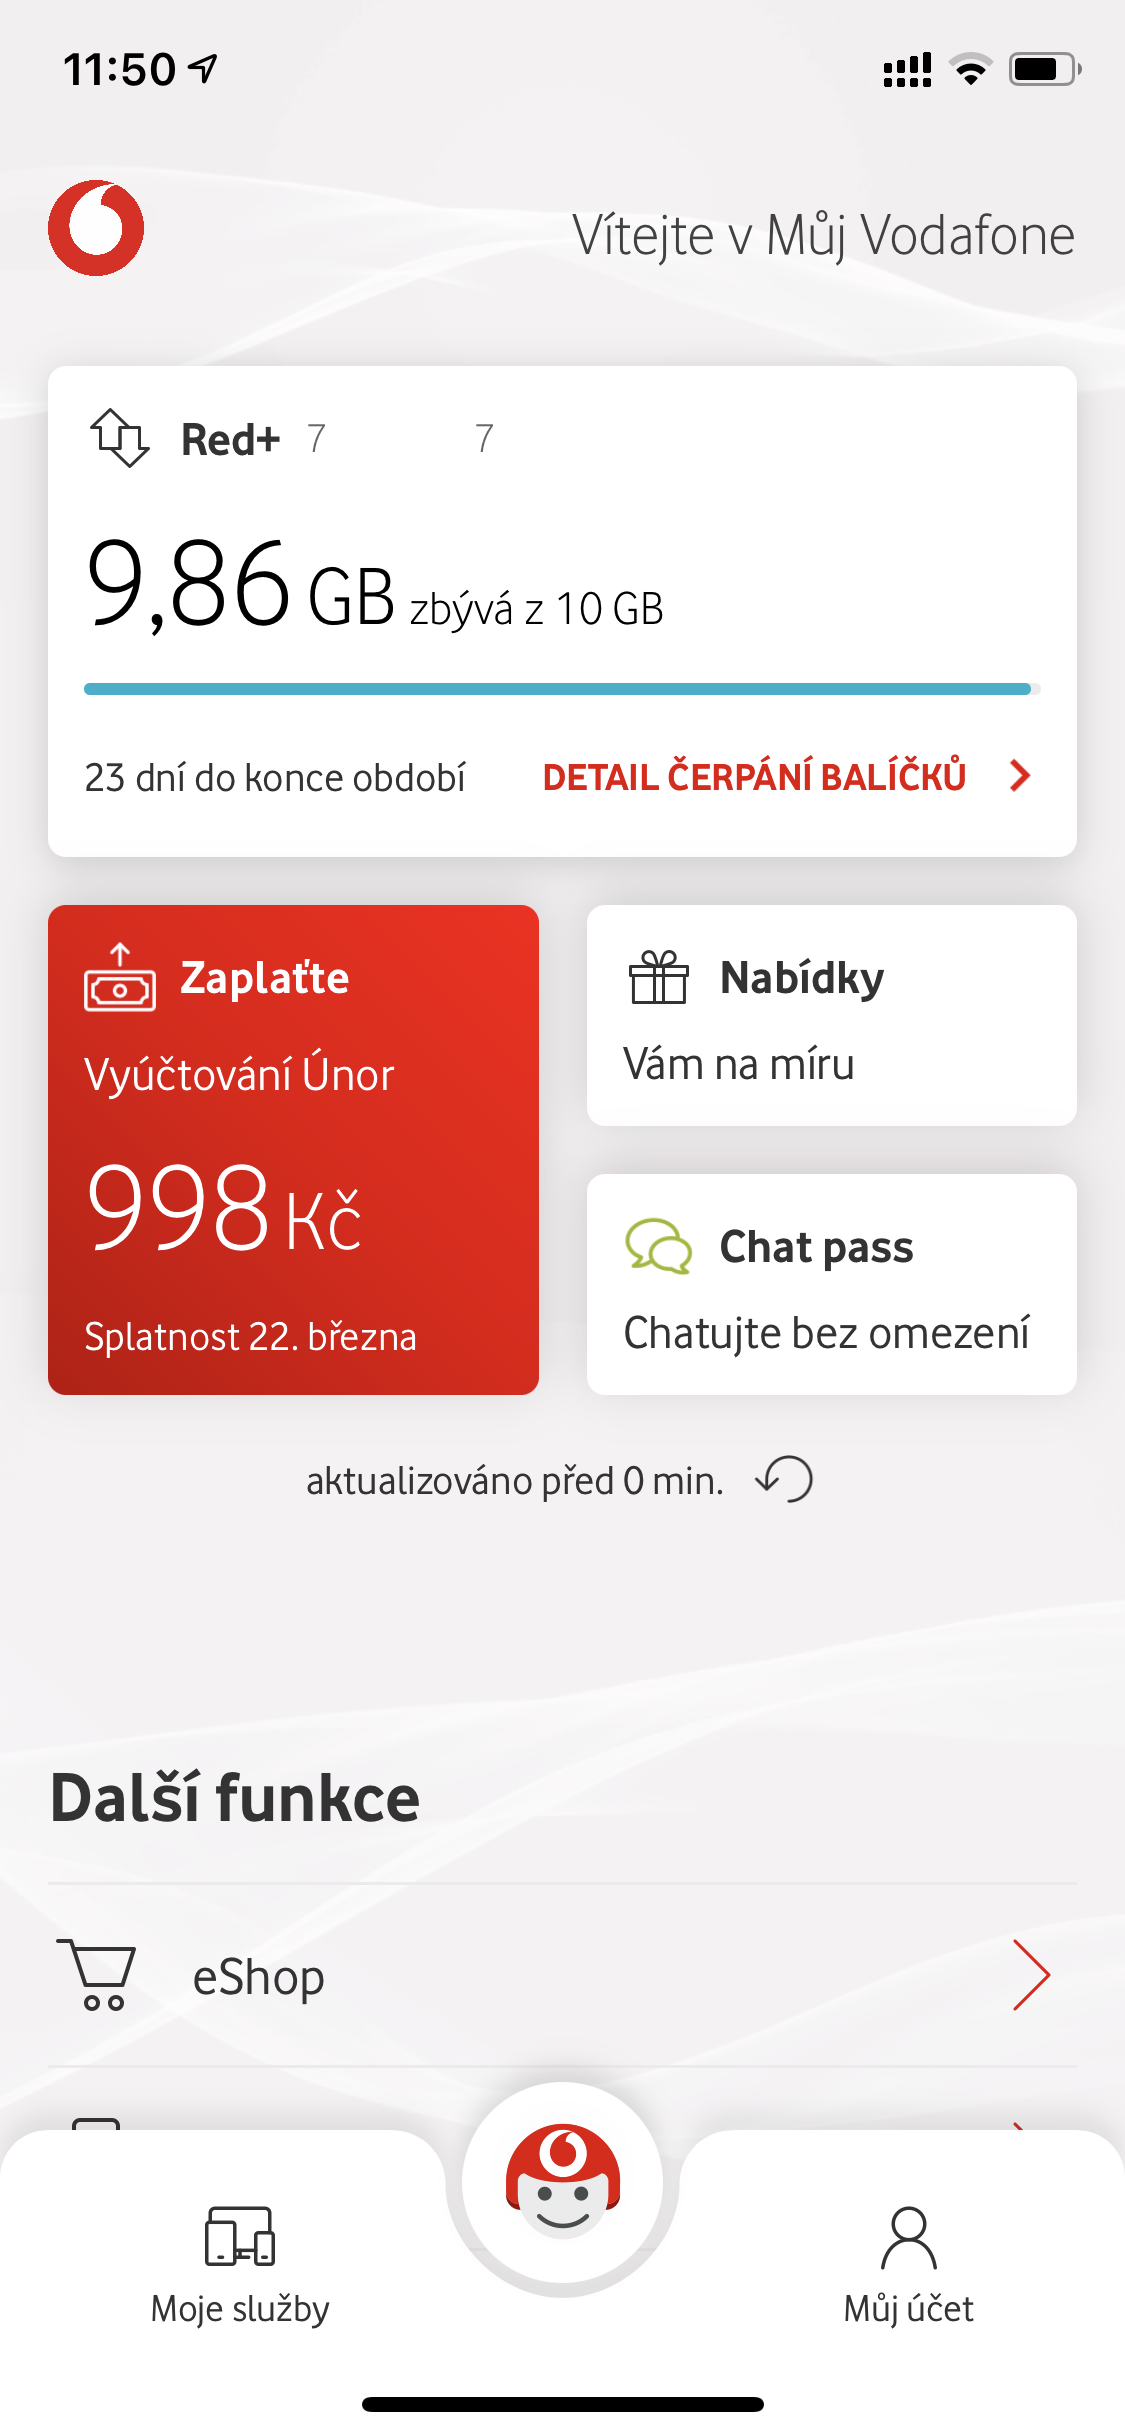 Jak se poprvé přihlásit do Vodafone?